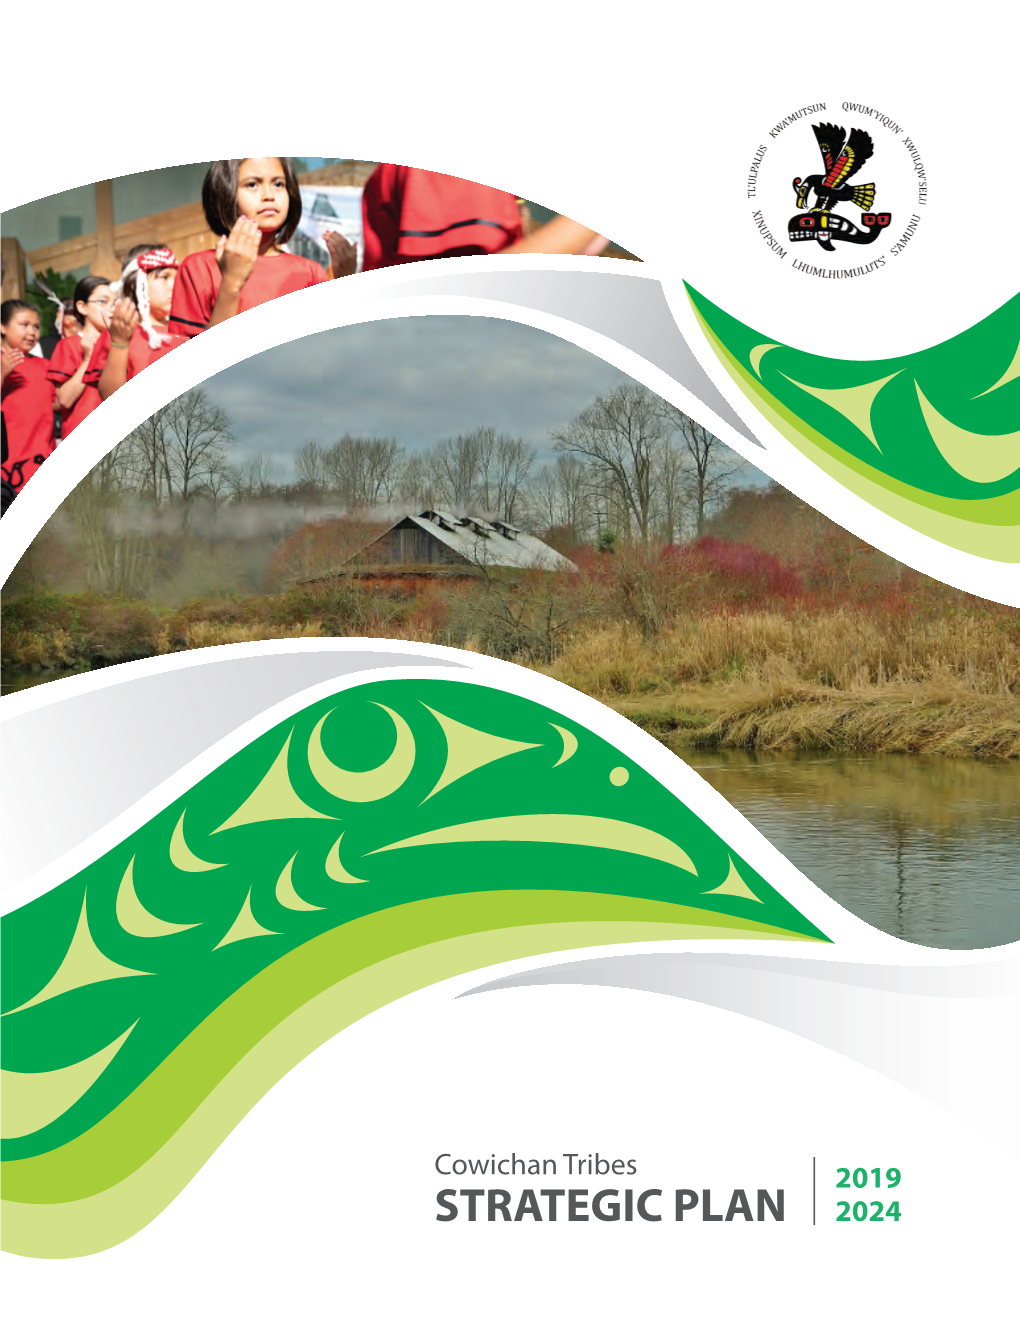 Cowichan Tribes 2019 STRATEGIC PLAN 2024 Cowichan Tribes STRATEGIC PLAN 2019-2024